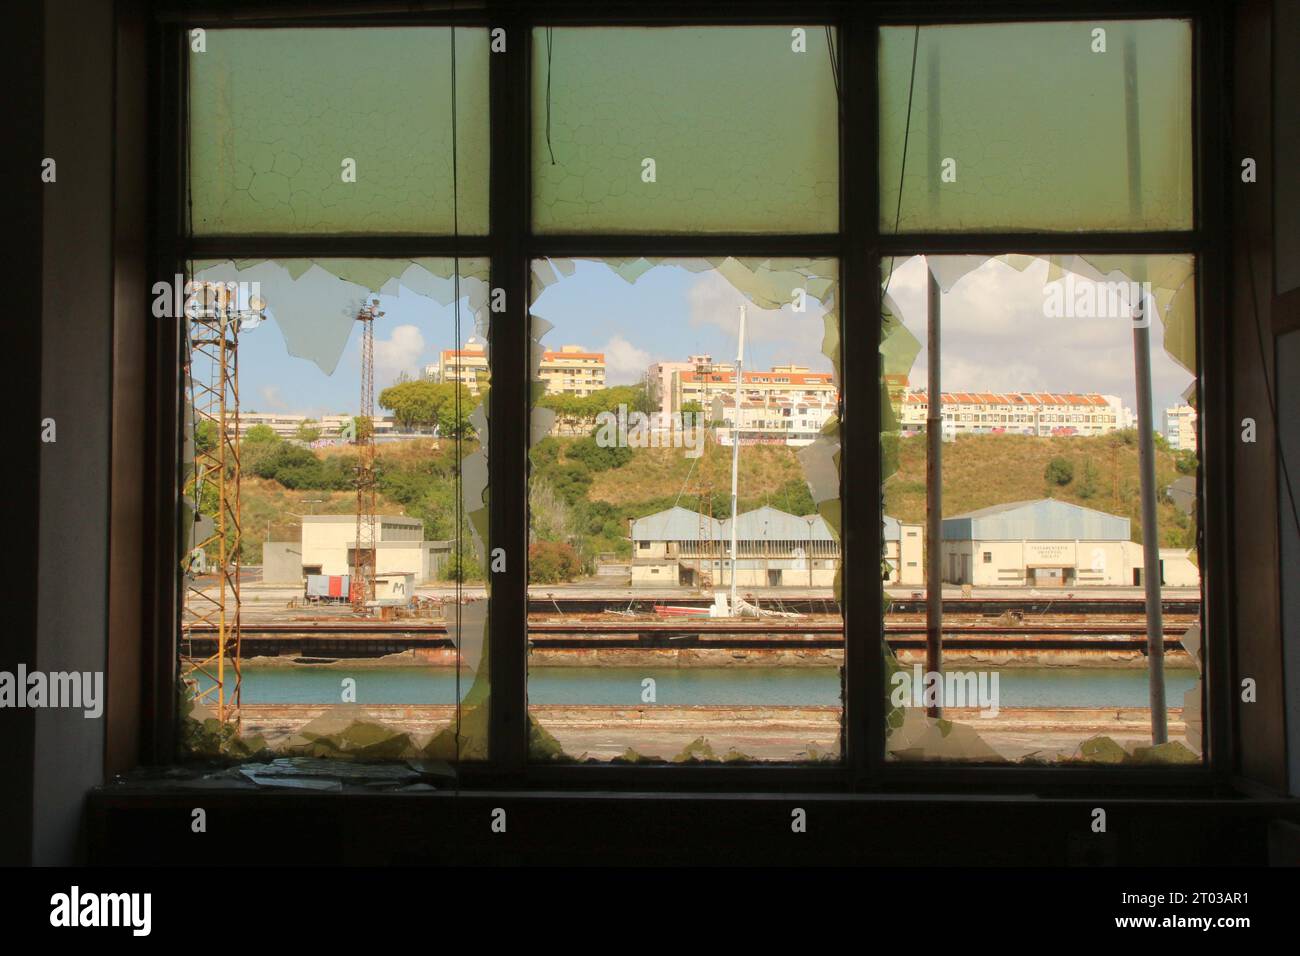 Une vue panoramique de l'extérieur est vue à travers une fenêtre cassée Banque D'Images